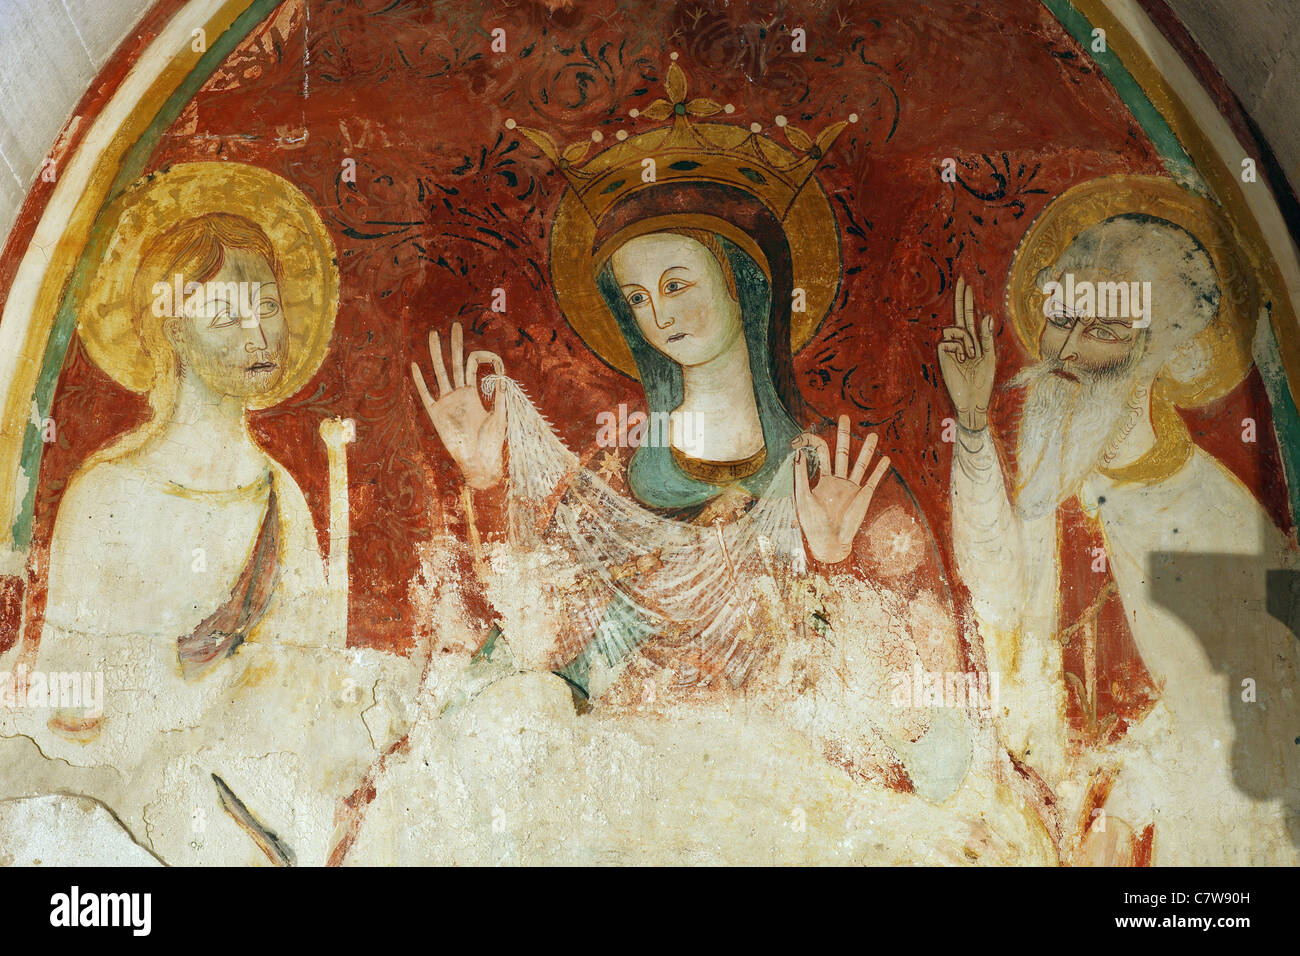 Italie, Pouilles, Trani, la cathédrale, fresque médiévale Banque D'Images